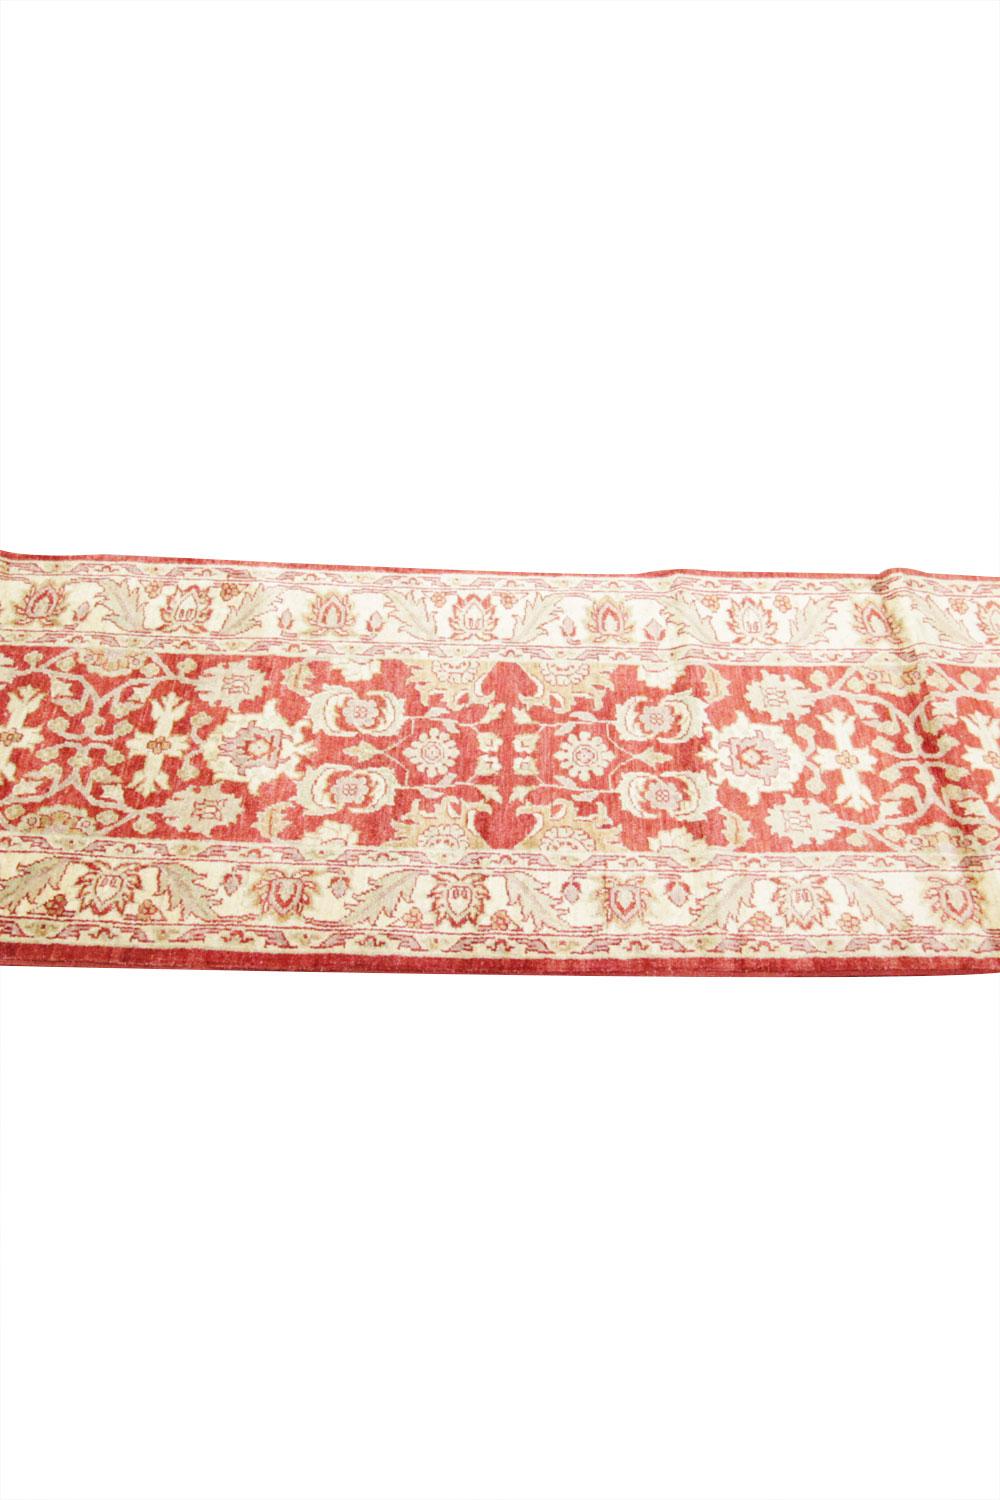 Late 20th Century Oriental Runner Rug, Handmade Long Hallway Carpet / Stairway Rug For Sale